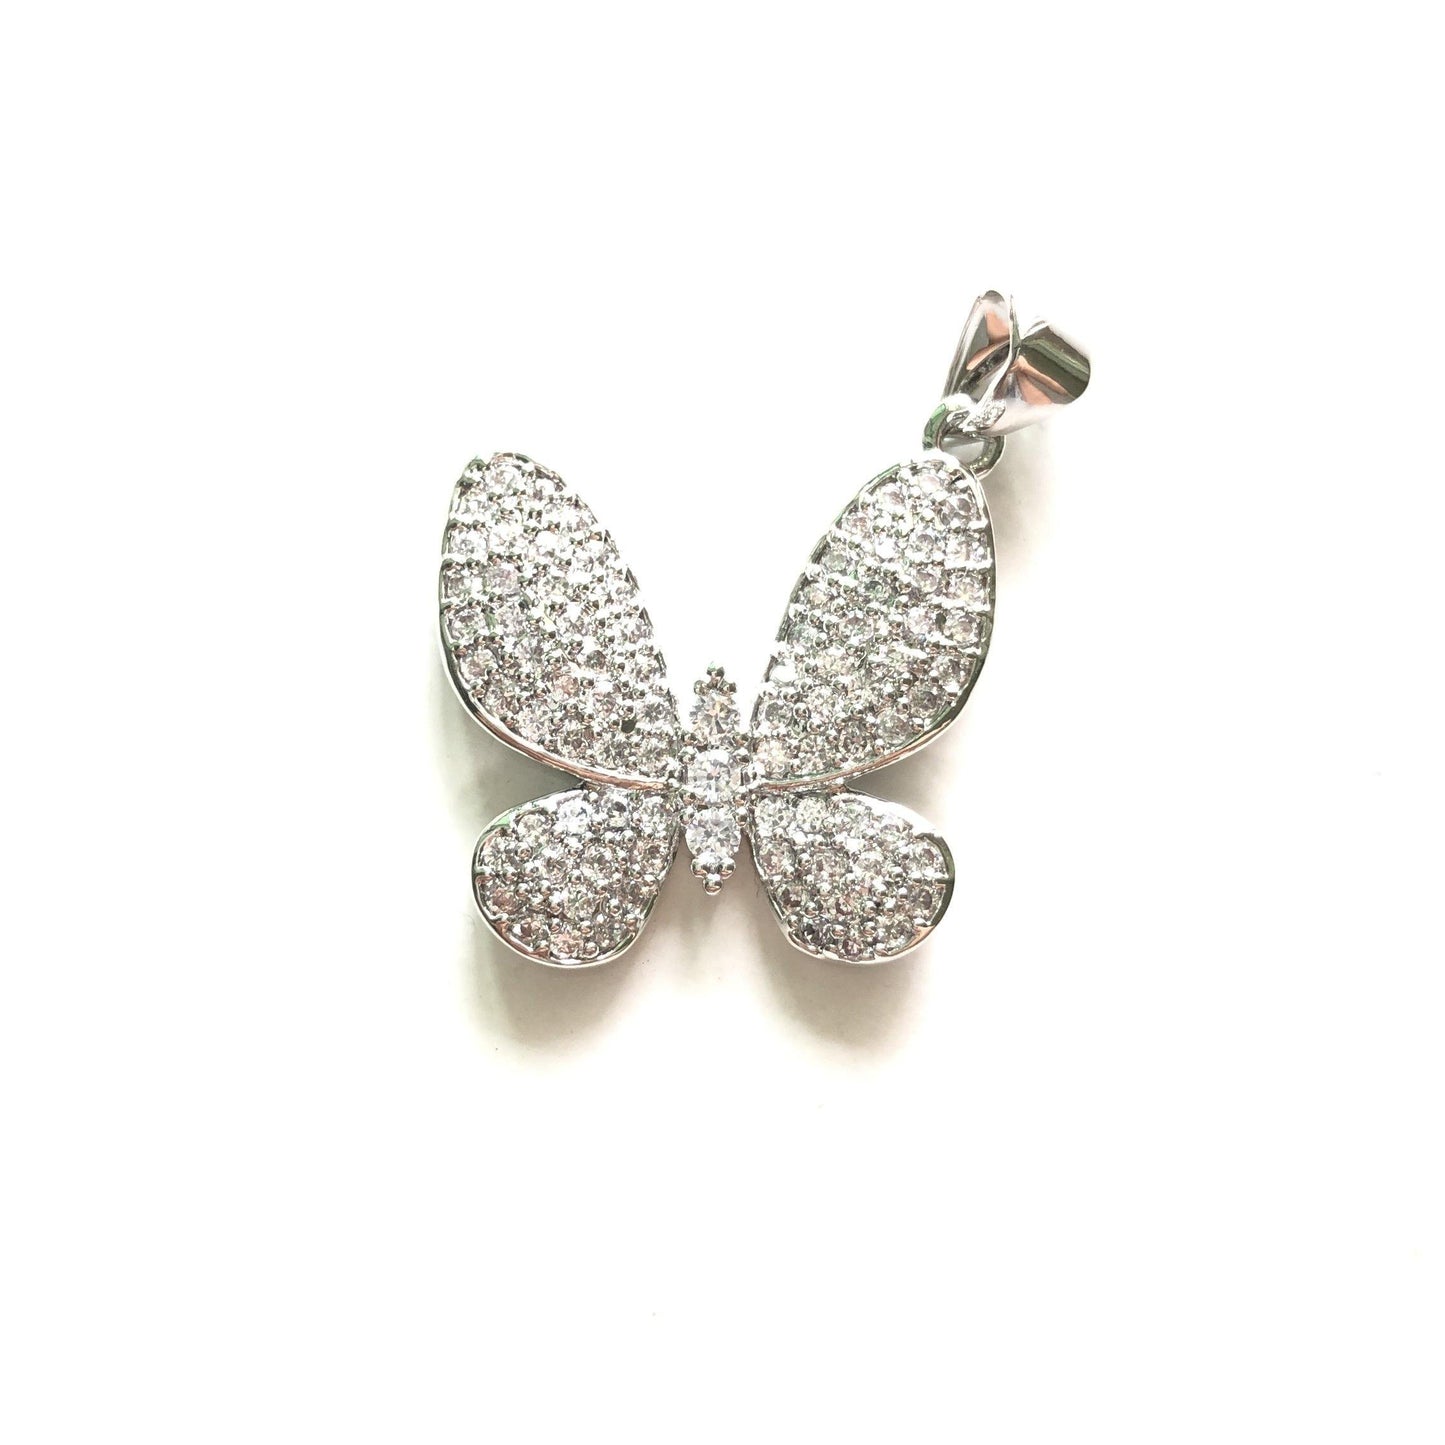 10pcs/lot 20*20mm CZ Paved Butterfly Charms Silver CZ Paved Charms Butterflies Charms Beads Beyond